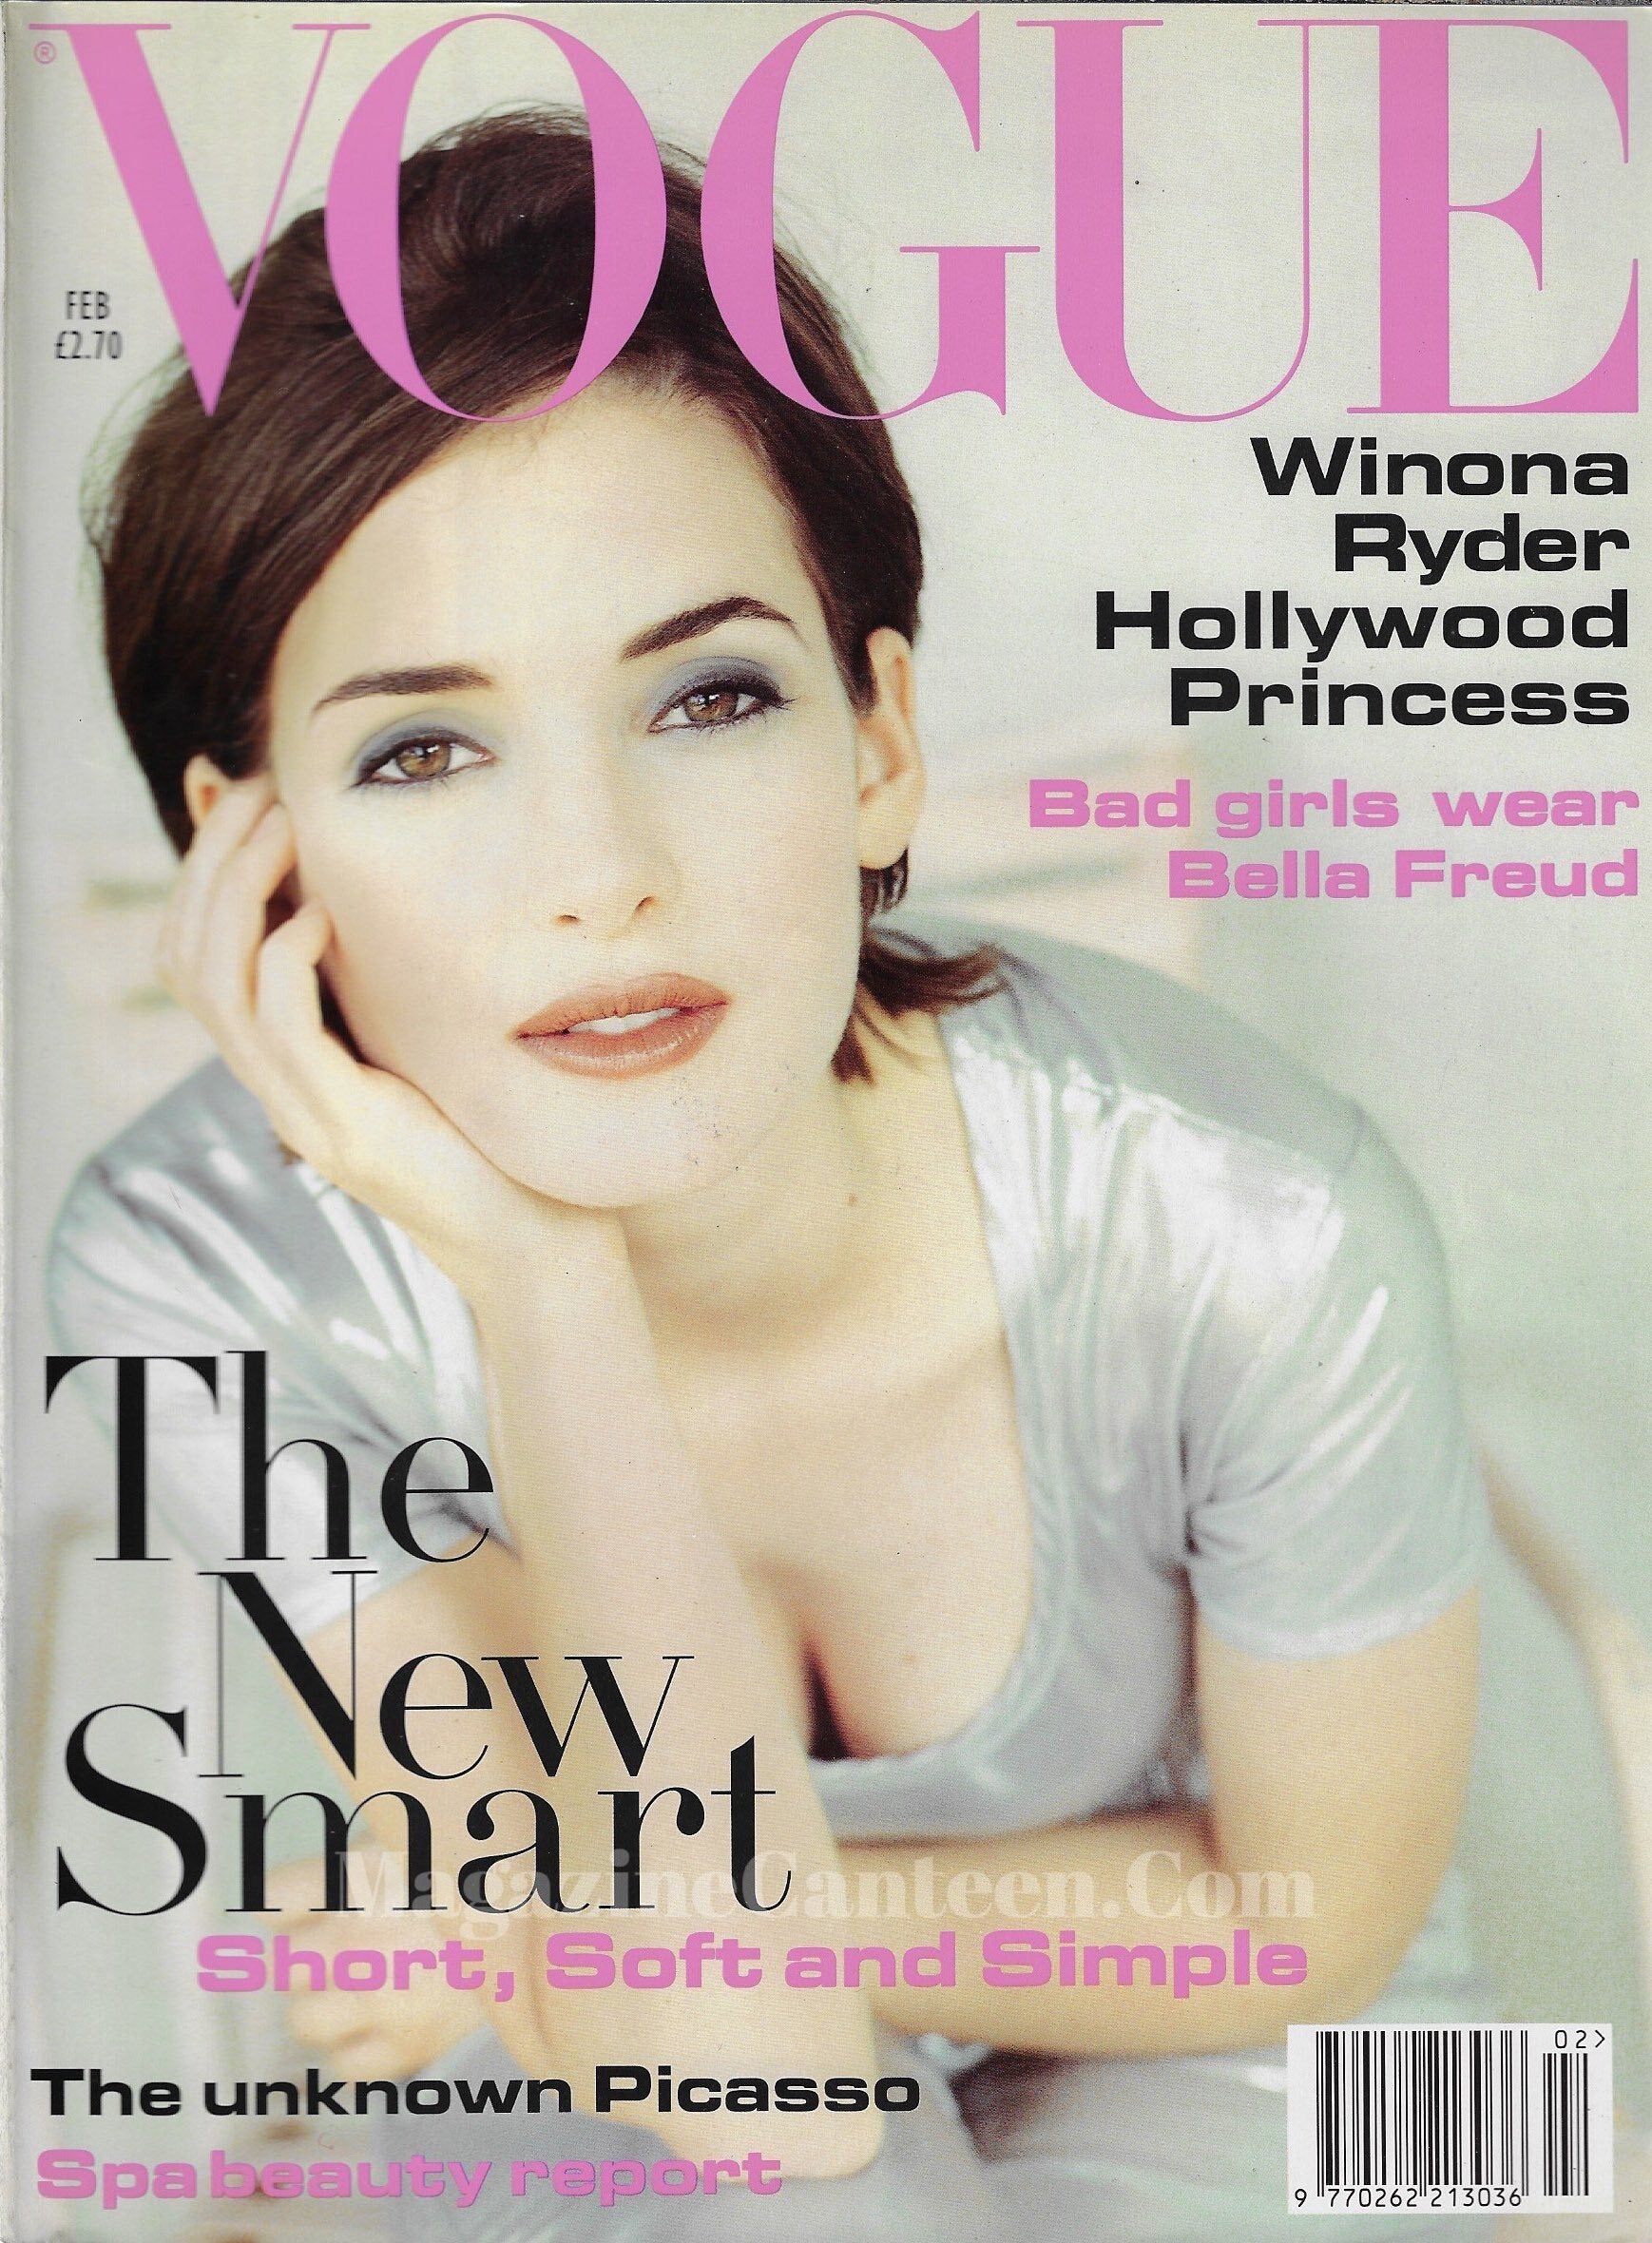 Vogue Magazine February 1994 - Winona Ryder